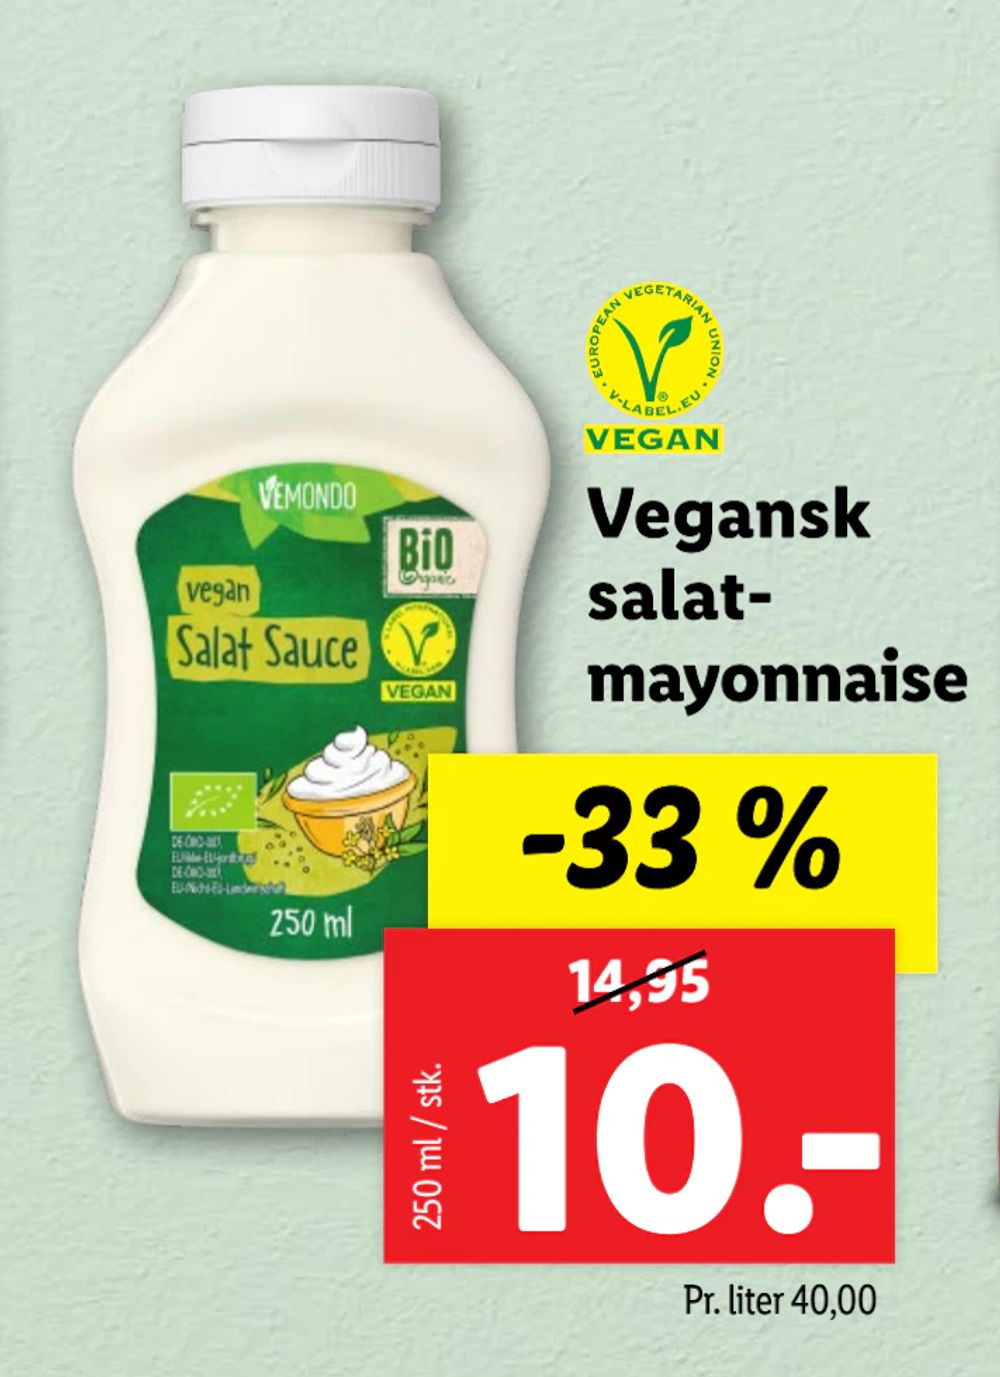 Tilbud på Vegansk salatmayonnaise fra Lidl til 10 kr.